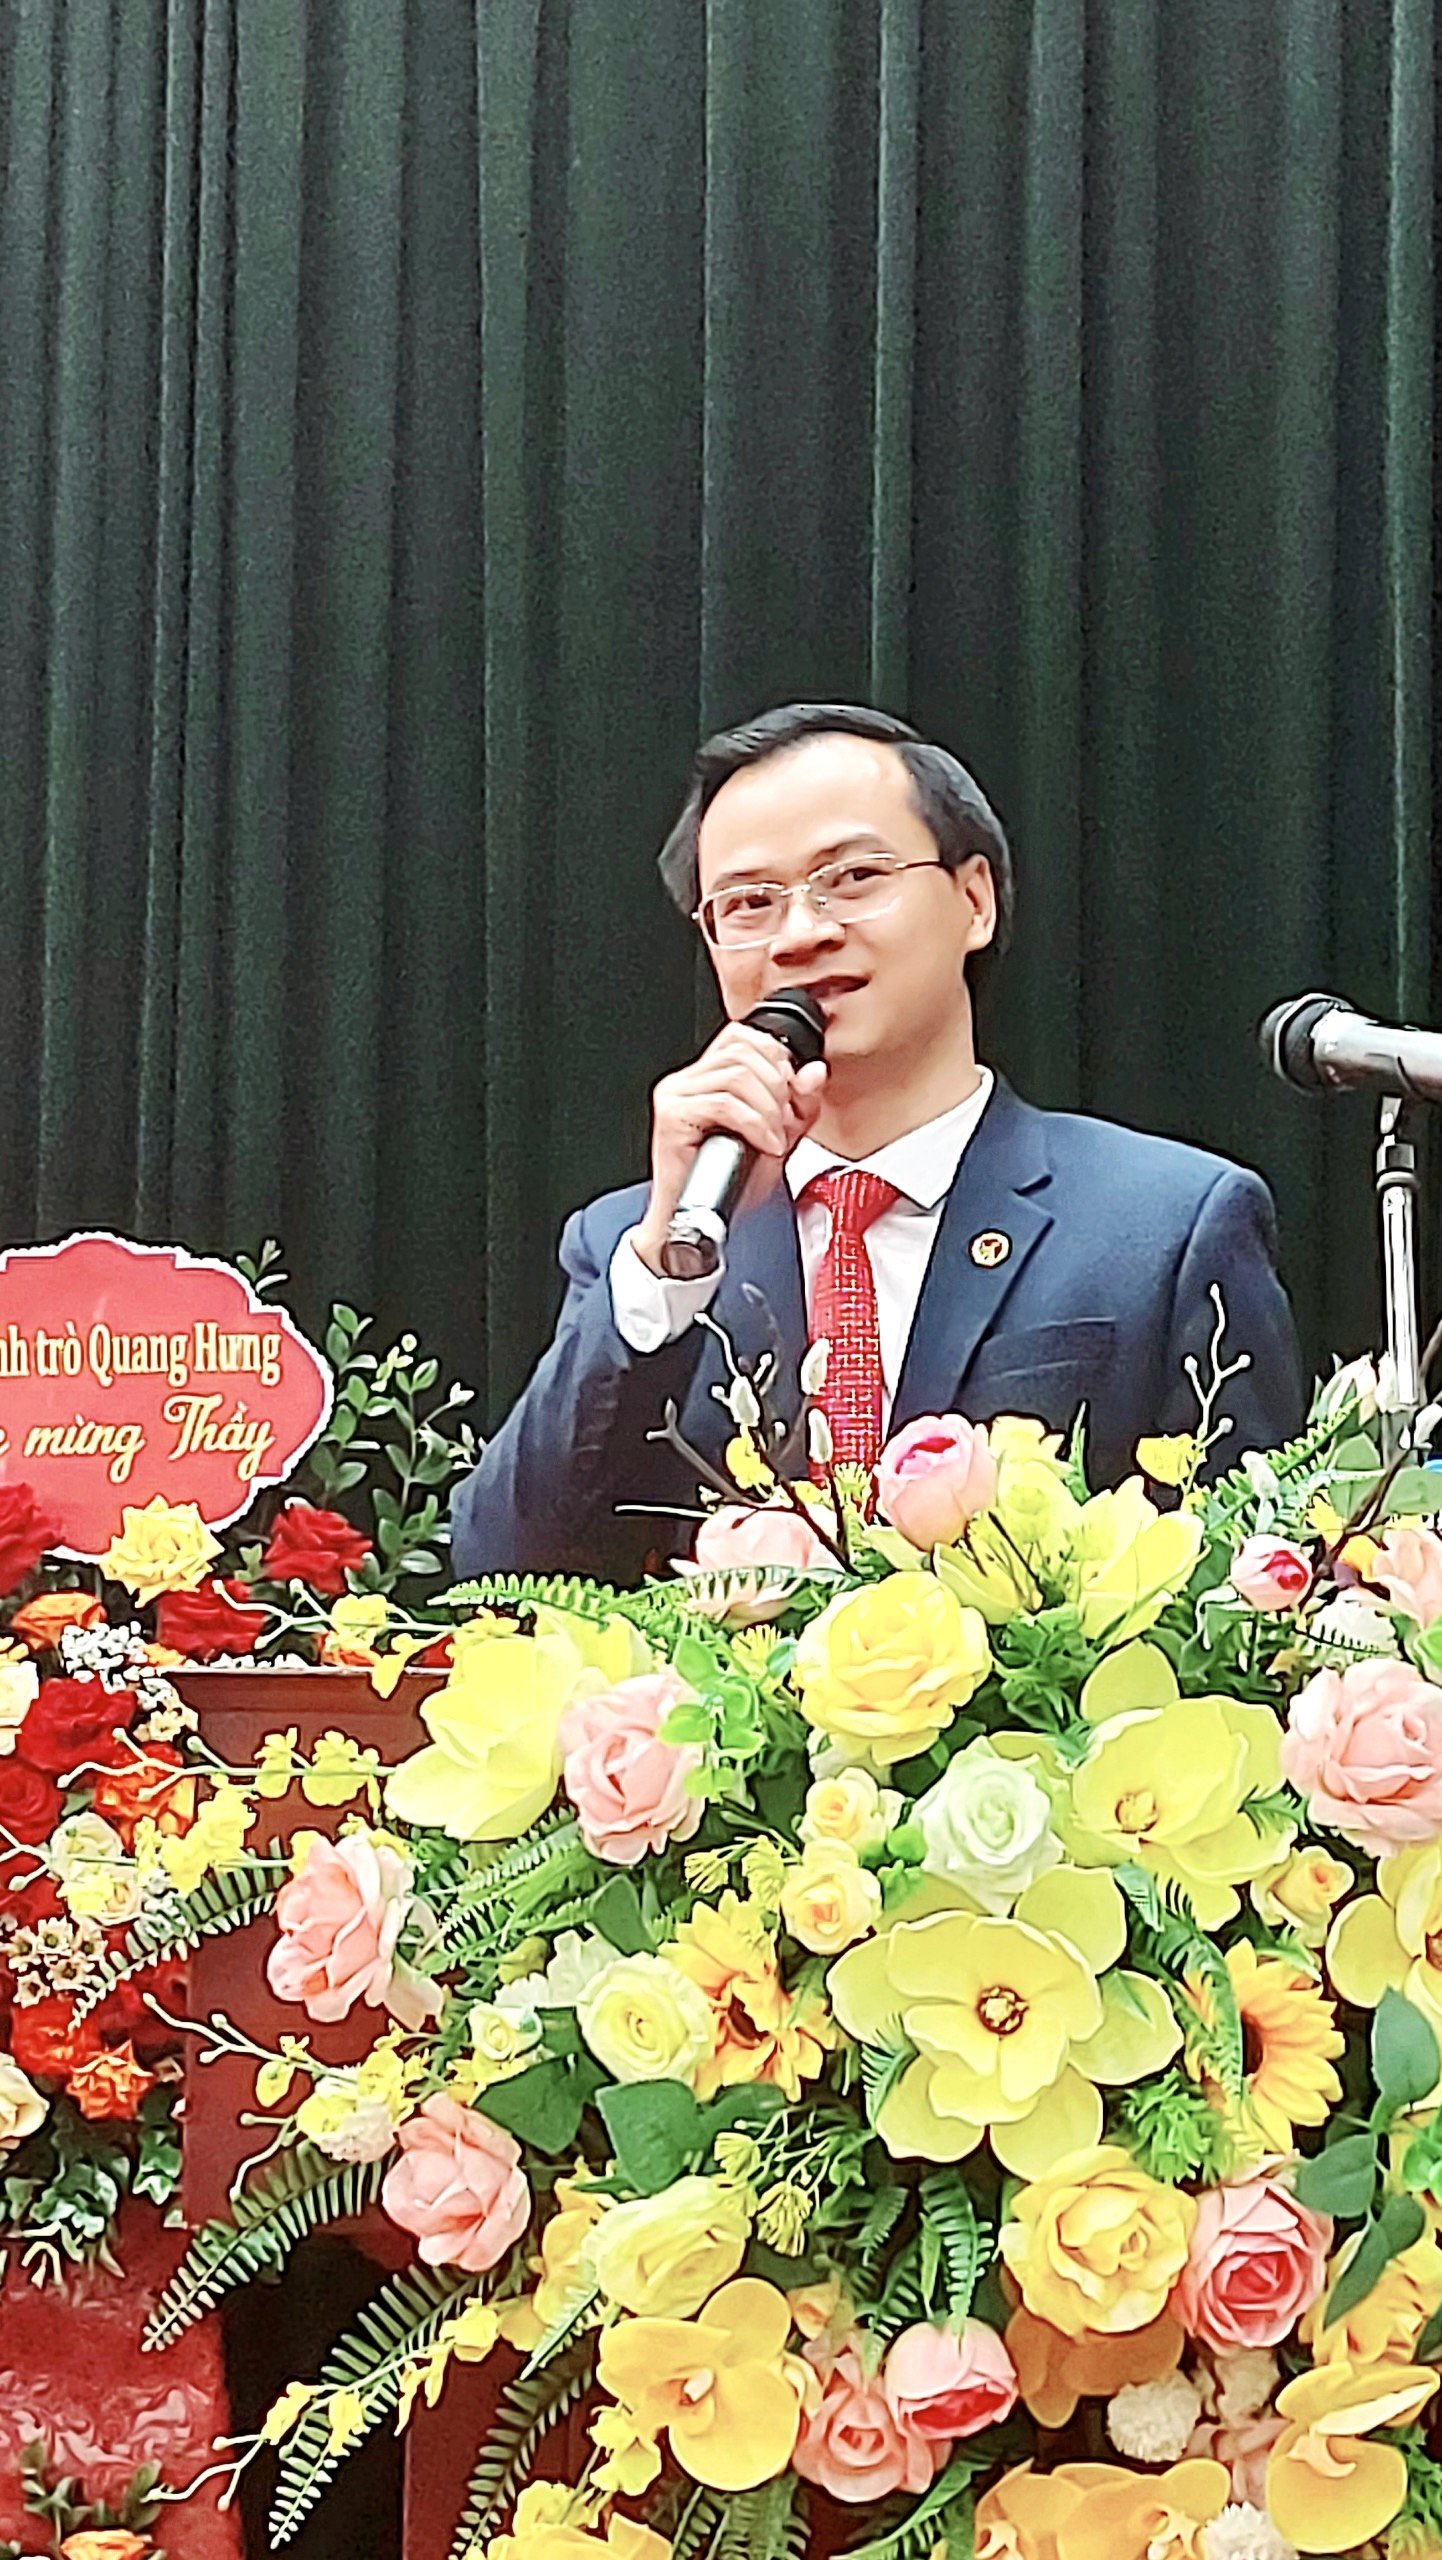 ông Hoàng Thái Tuấn Anh – Tổng thư ký Tổ chức Kỷ lục Đông Dương – Trưởng đại diện Miền Bắc Tổ chức Kỷ lục Việt Nam đại diện công bố Kỷ lục.